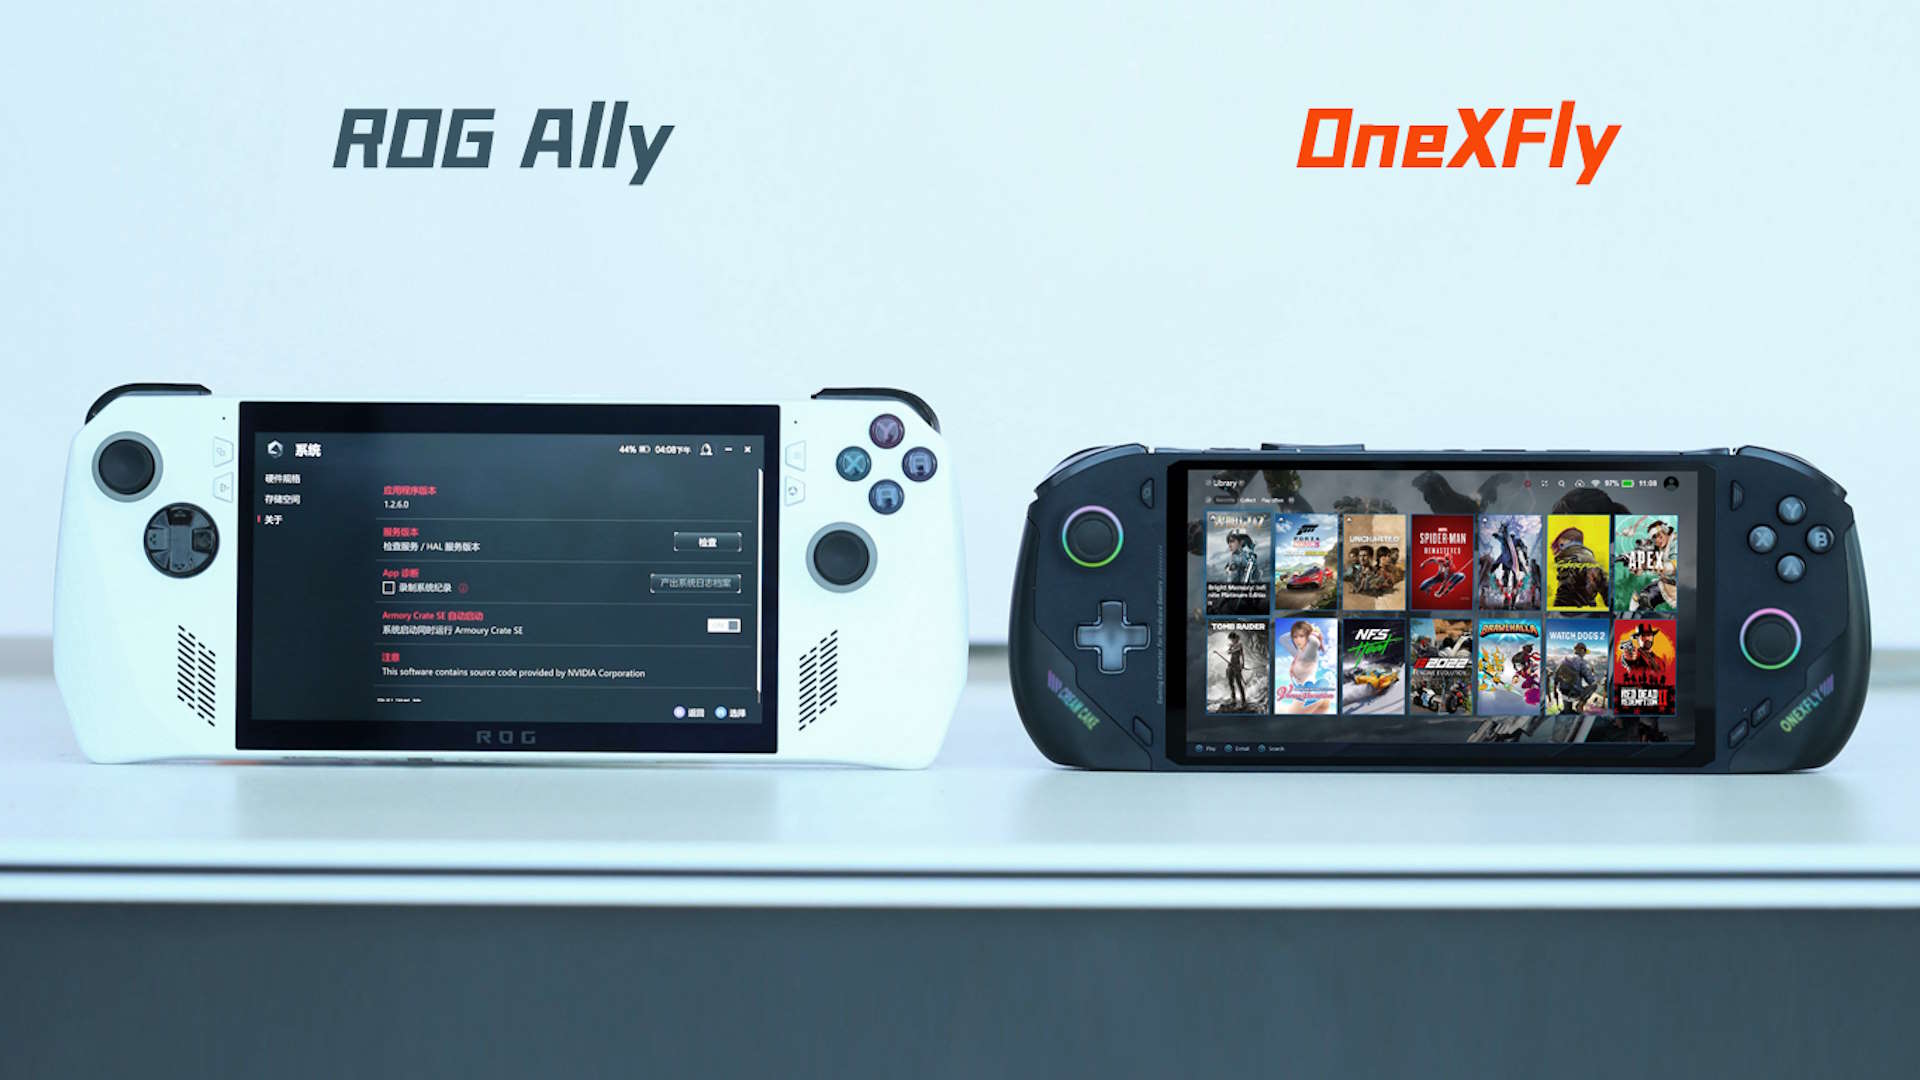 OneXFly Handheld-Gaming-PC